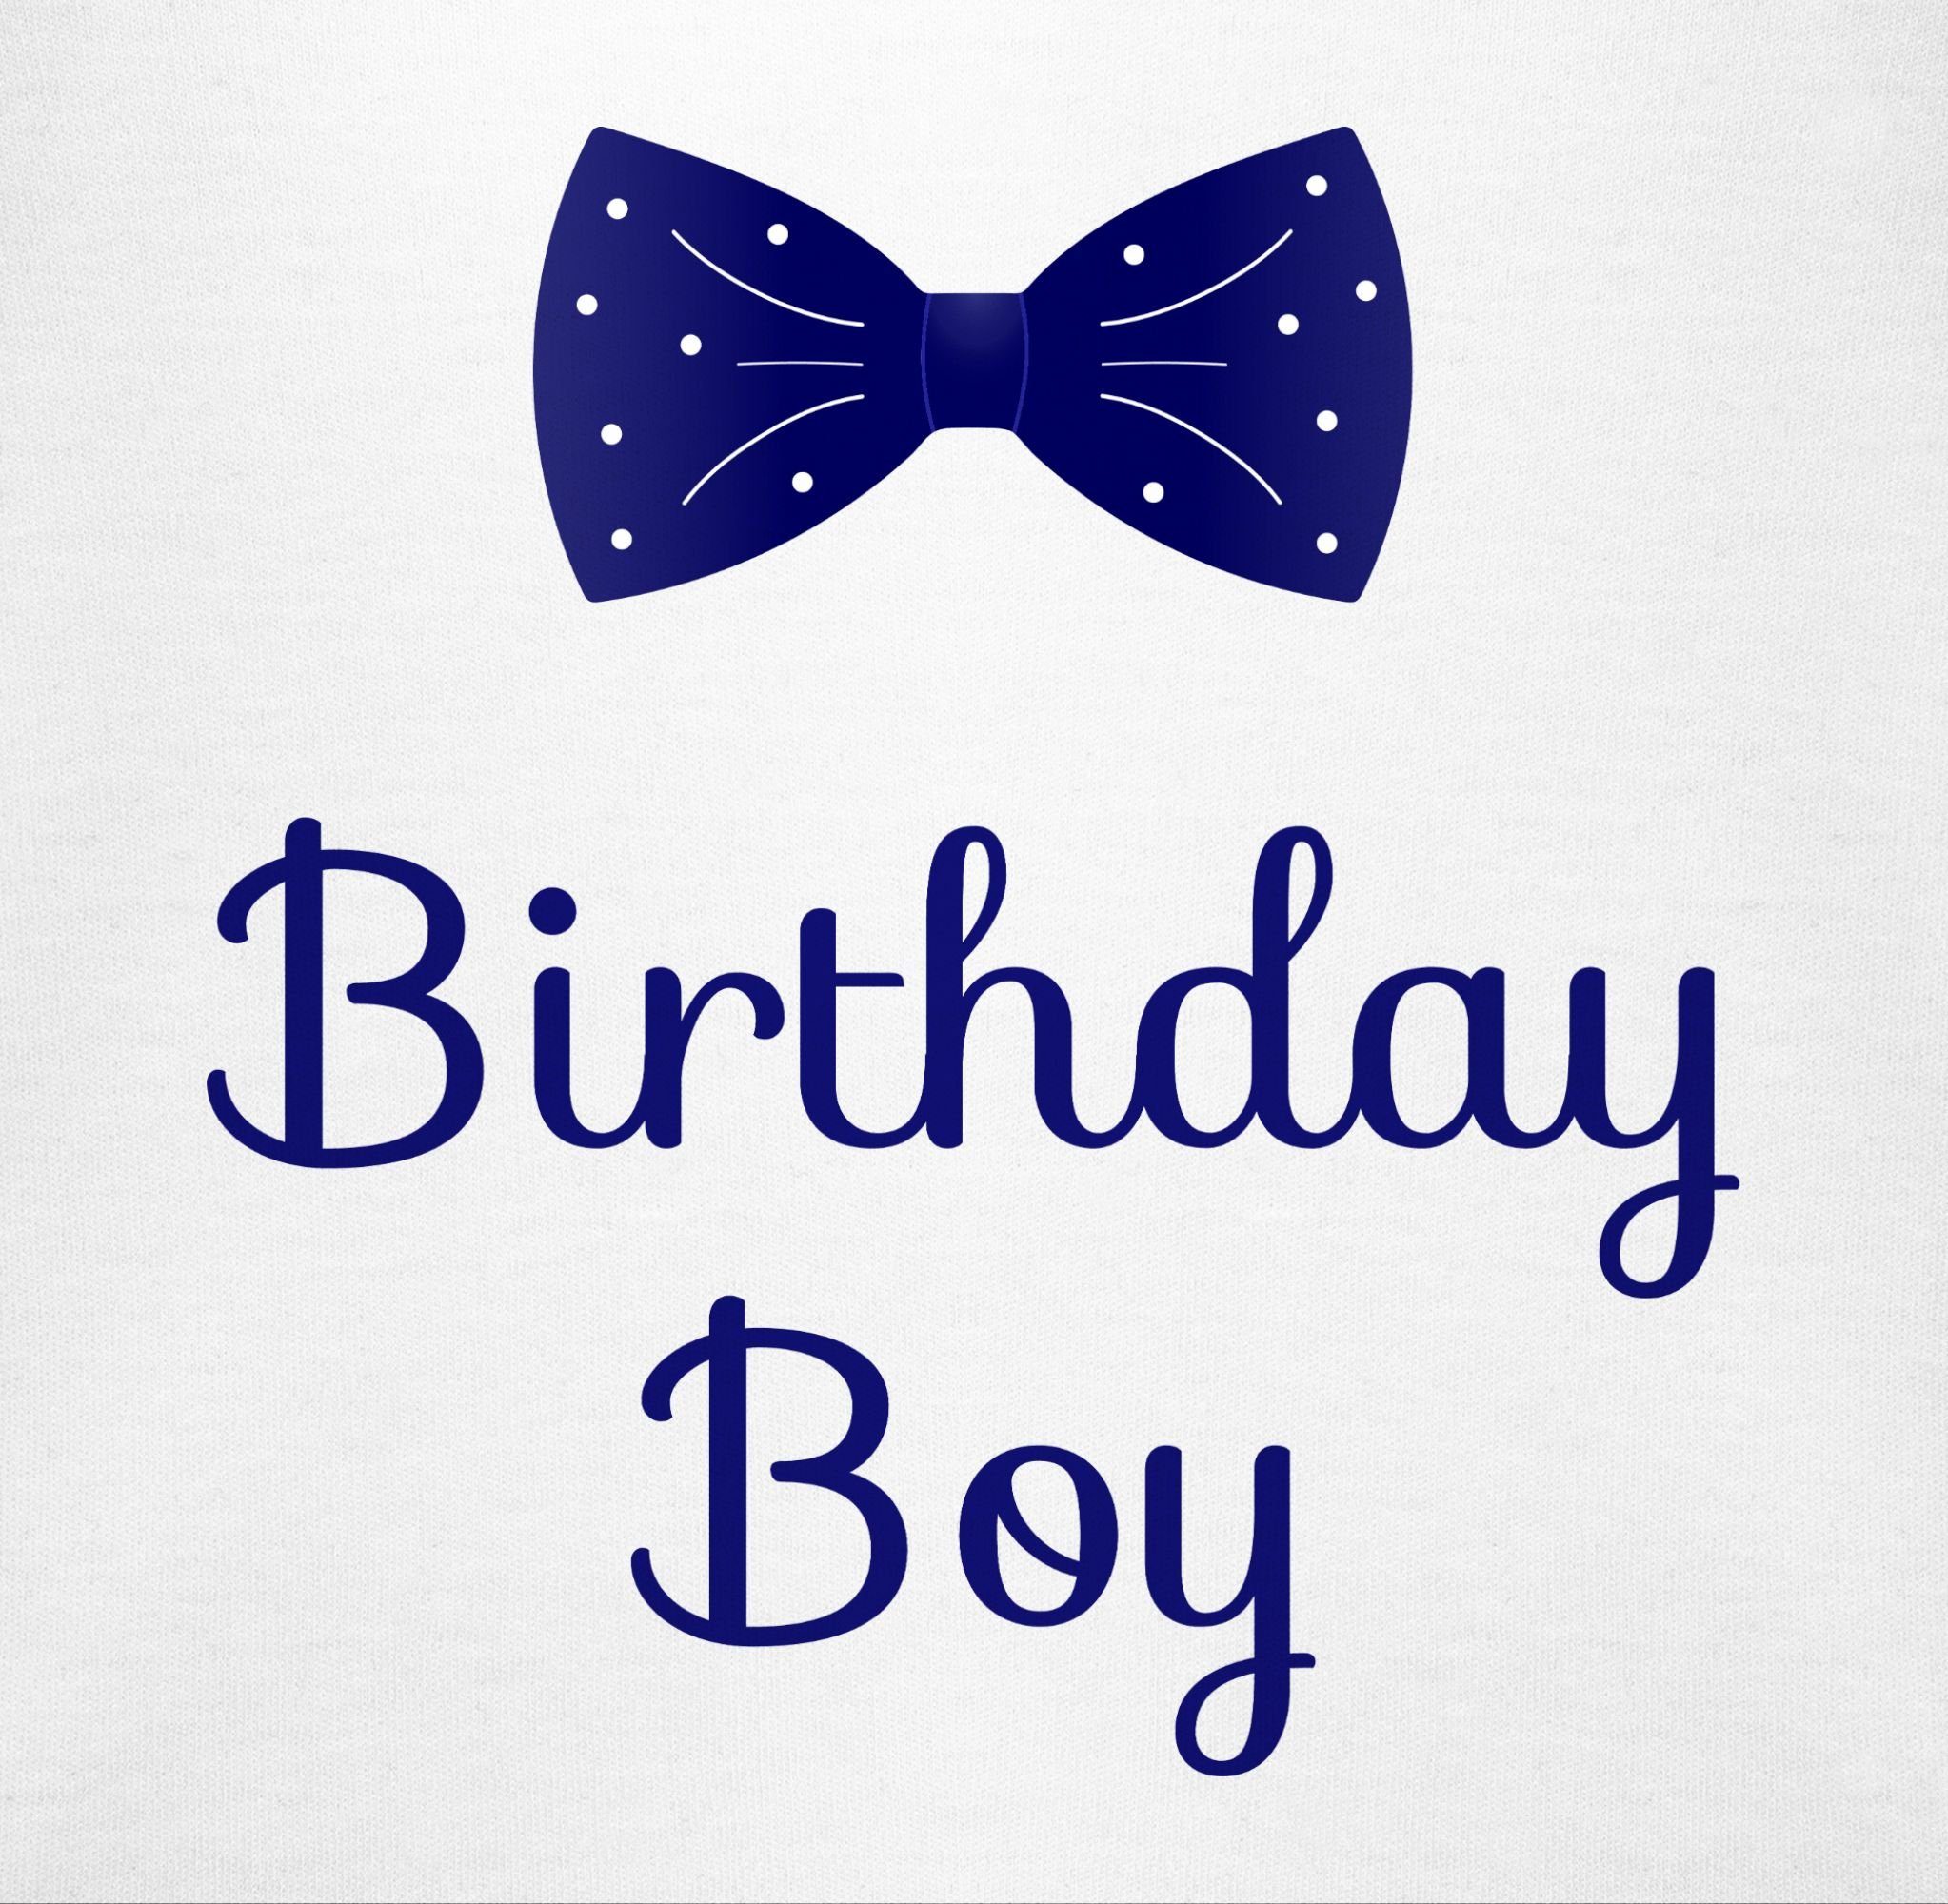 Geschenk Shirtbody 1 Weiß Shirtracer für Fliege Geburtstag Boy - Birthday Babys